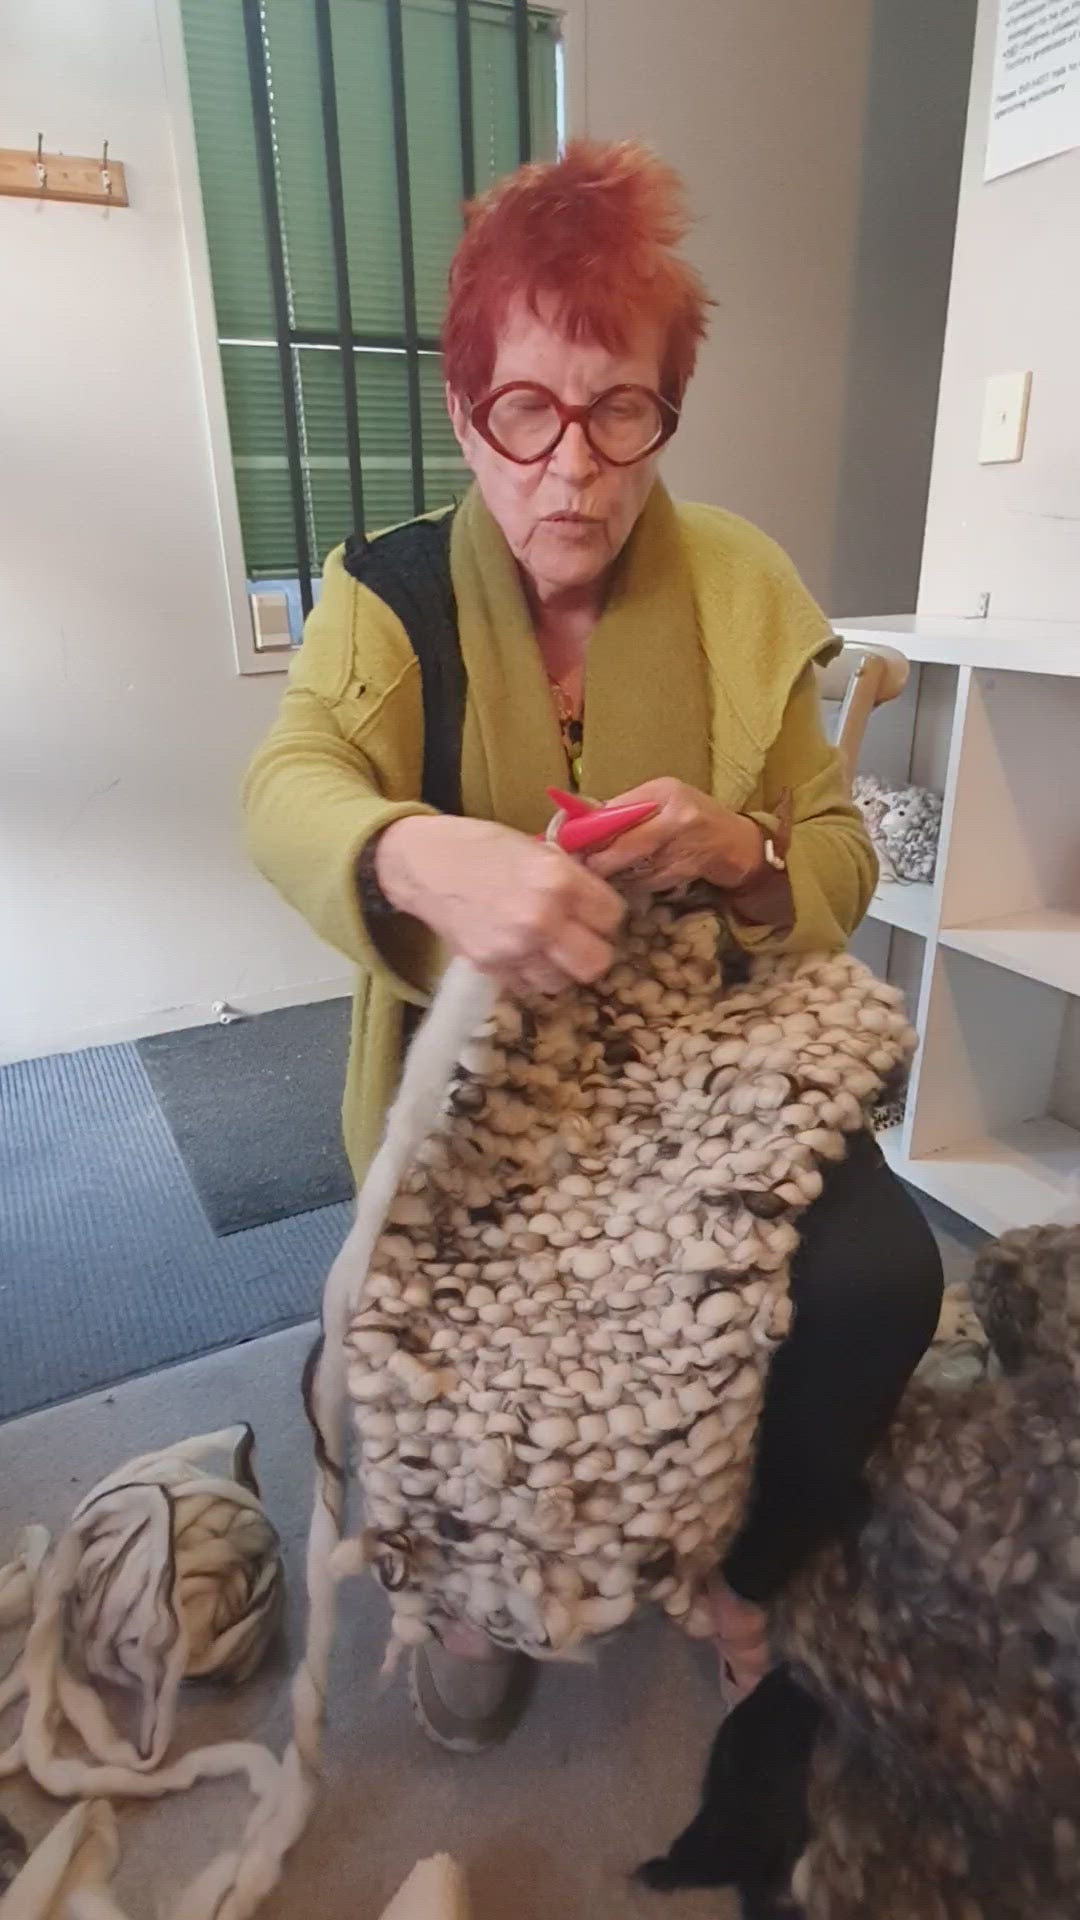 Big Wool Knitting Kits - DiY Throw/Blanket or Mat